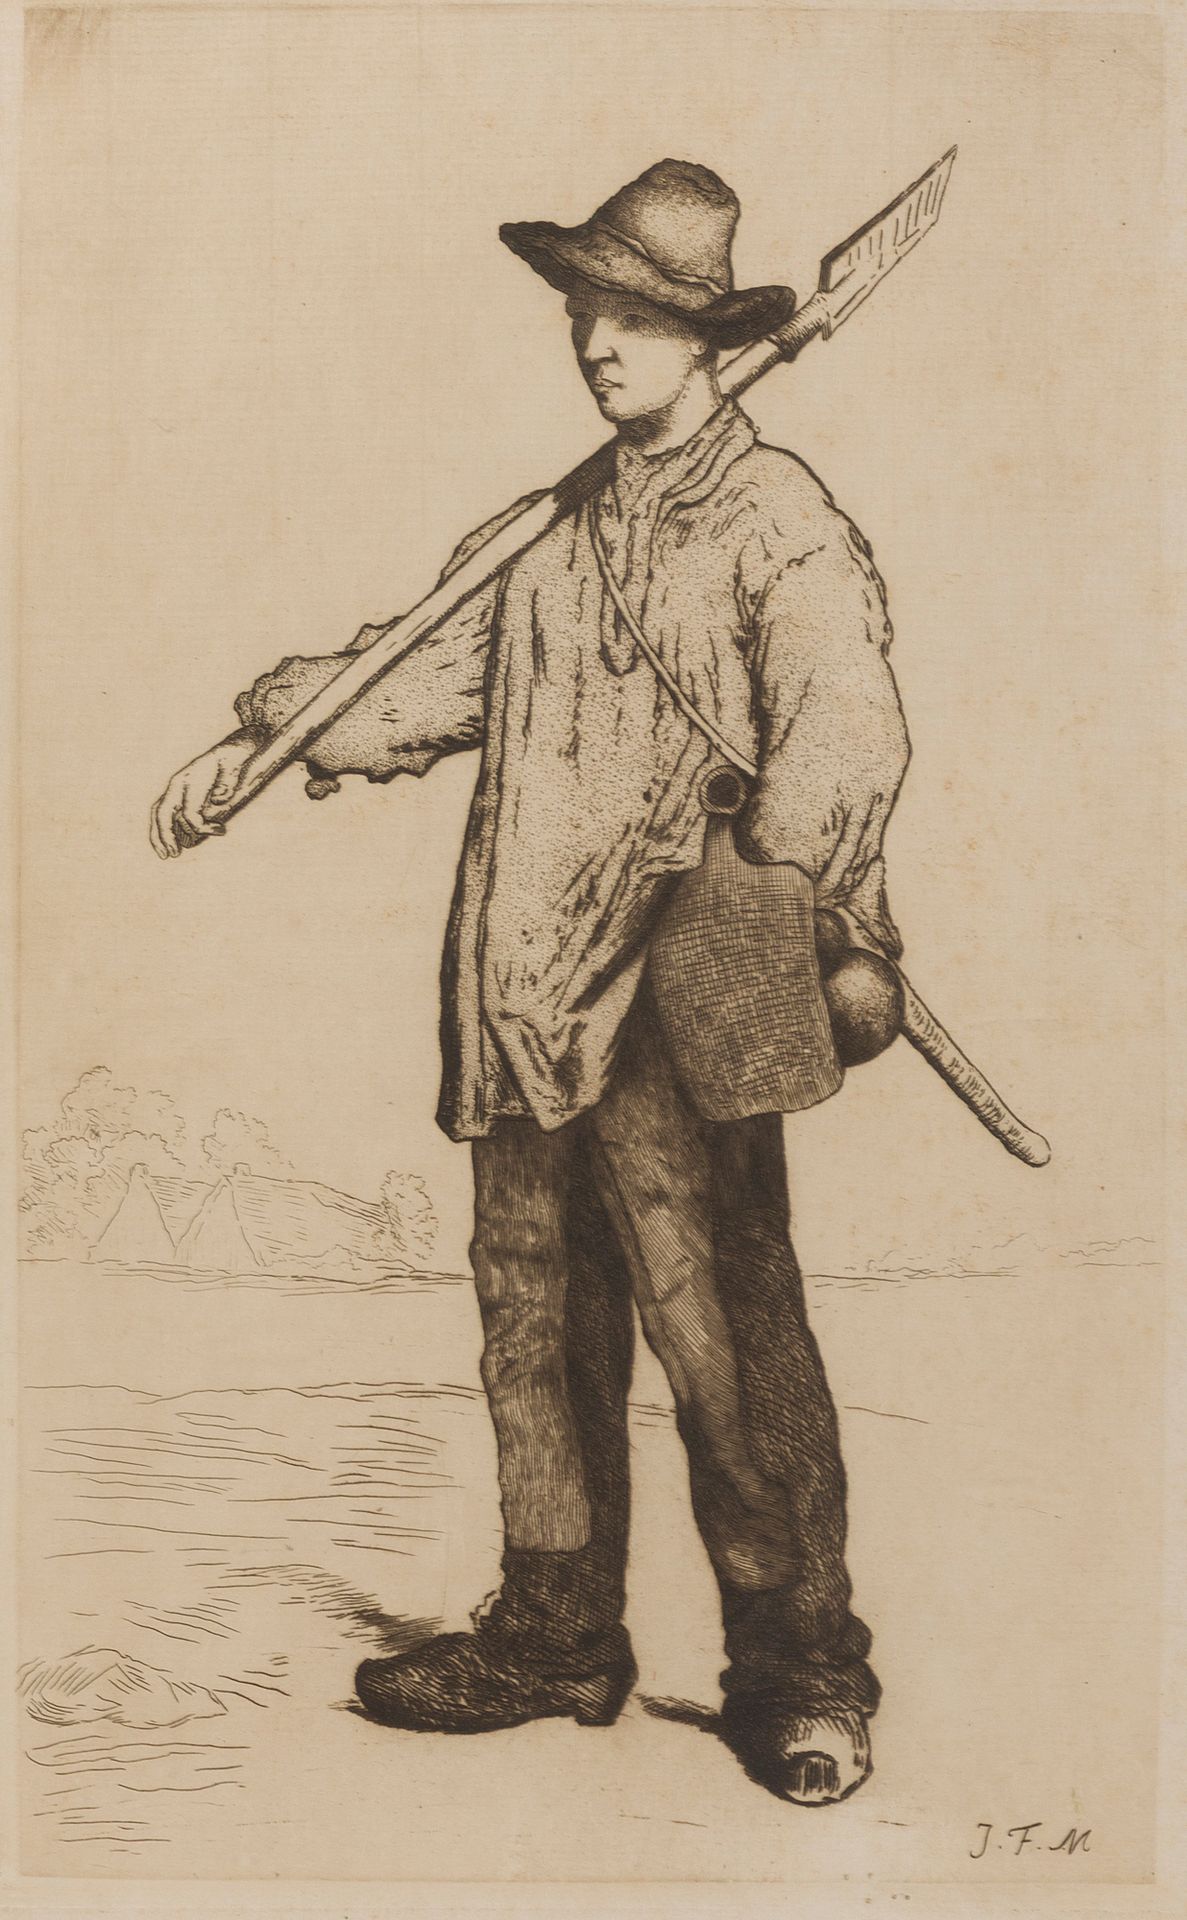 Null Dopo Jean-François MILLET (1814-1875)

Lavoratore della terra

Incisione